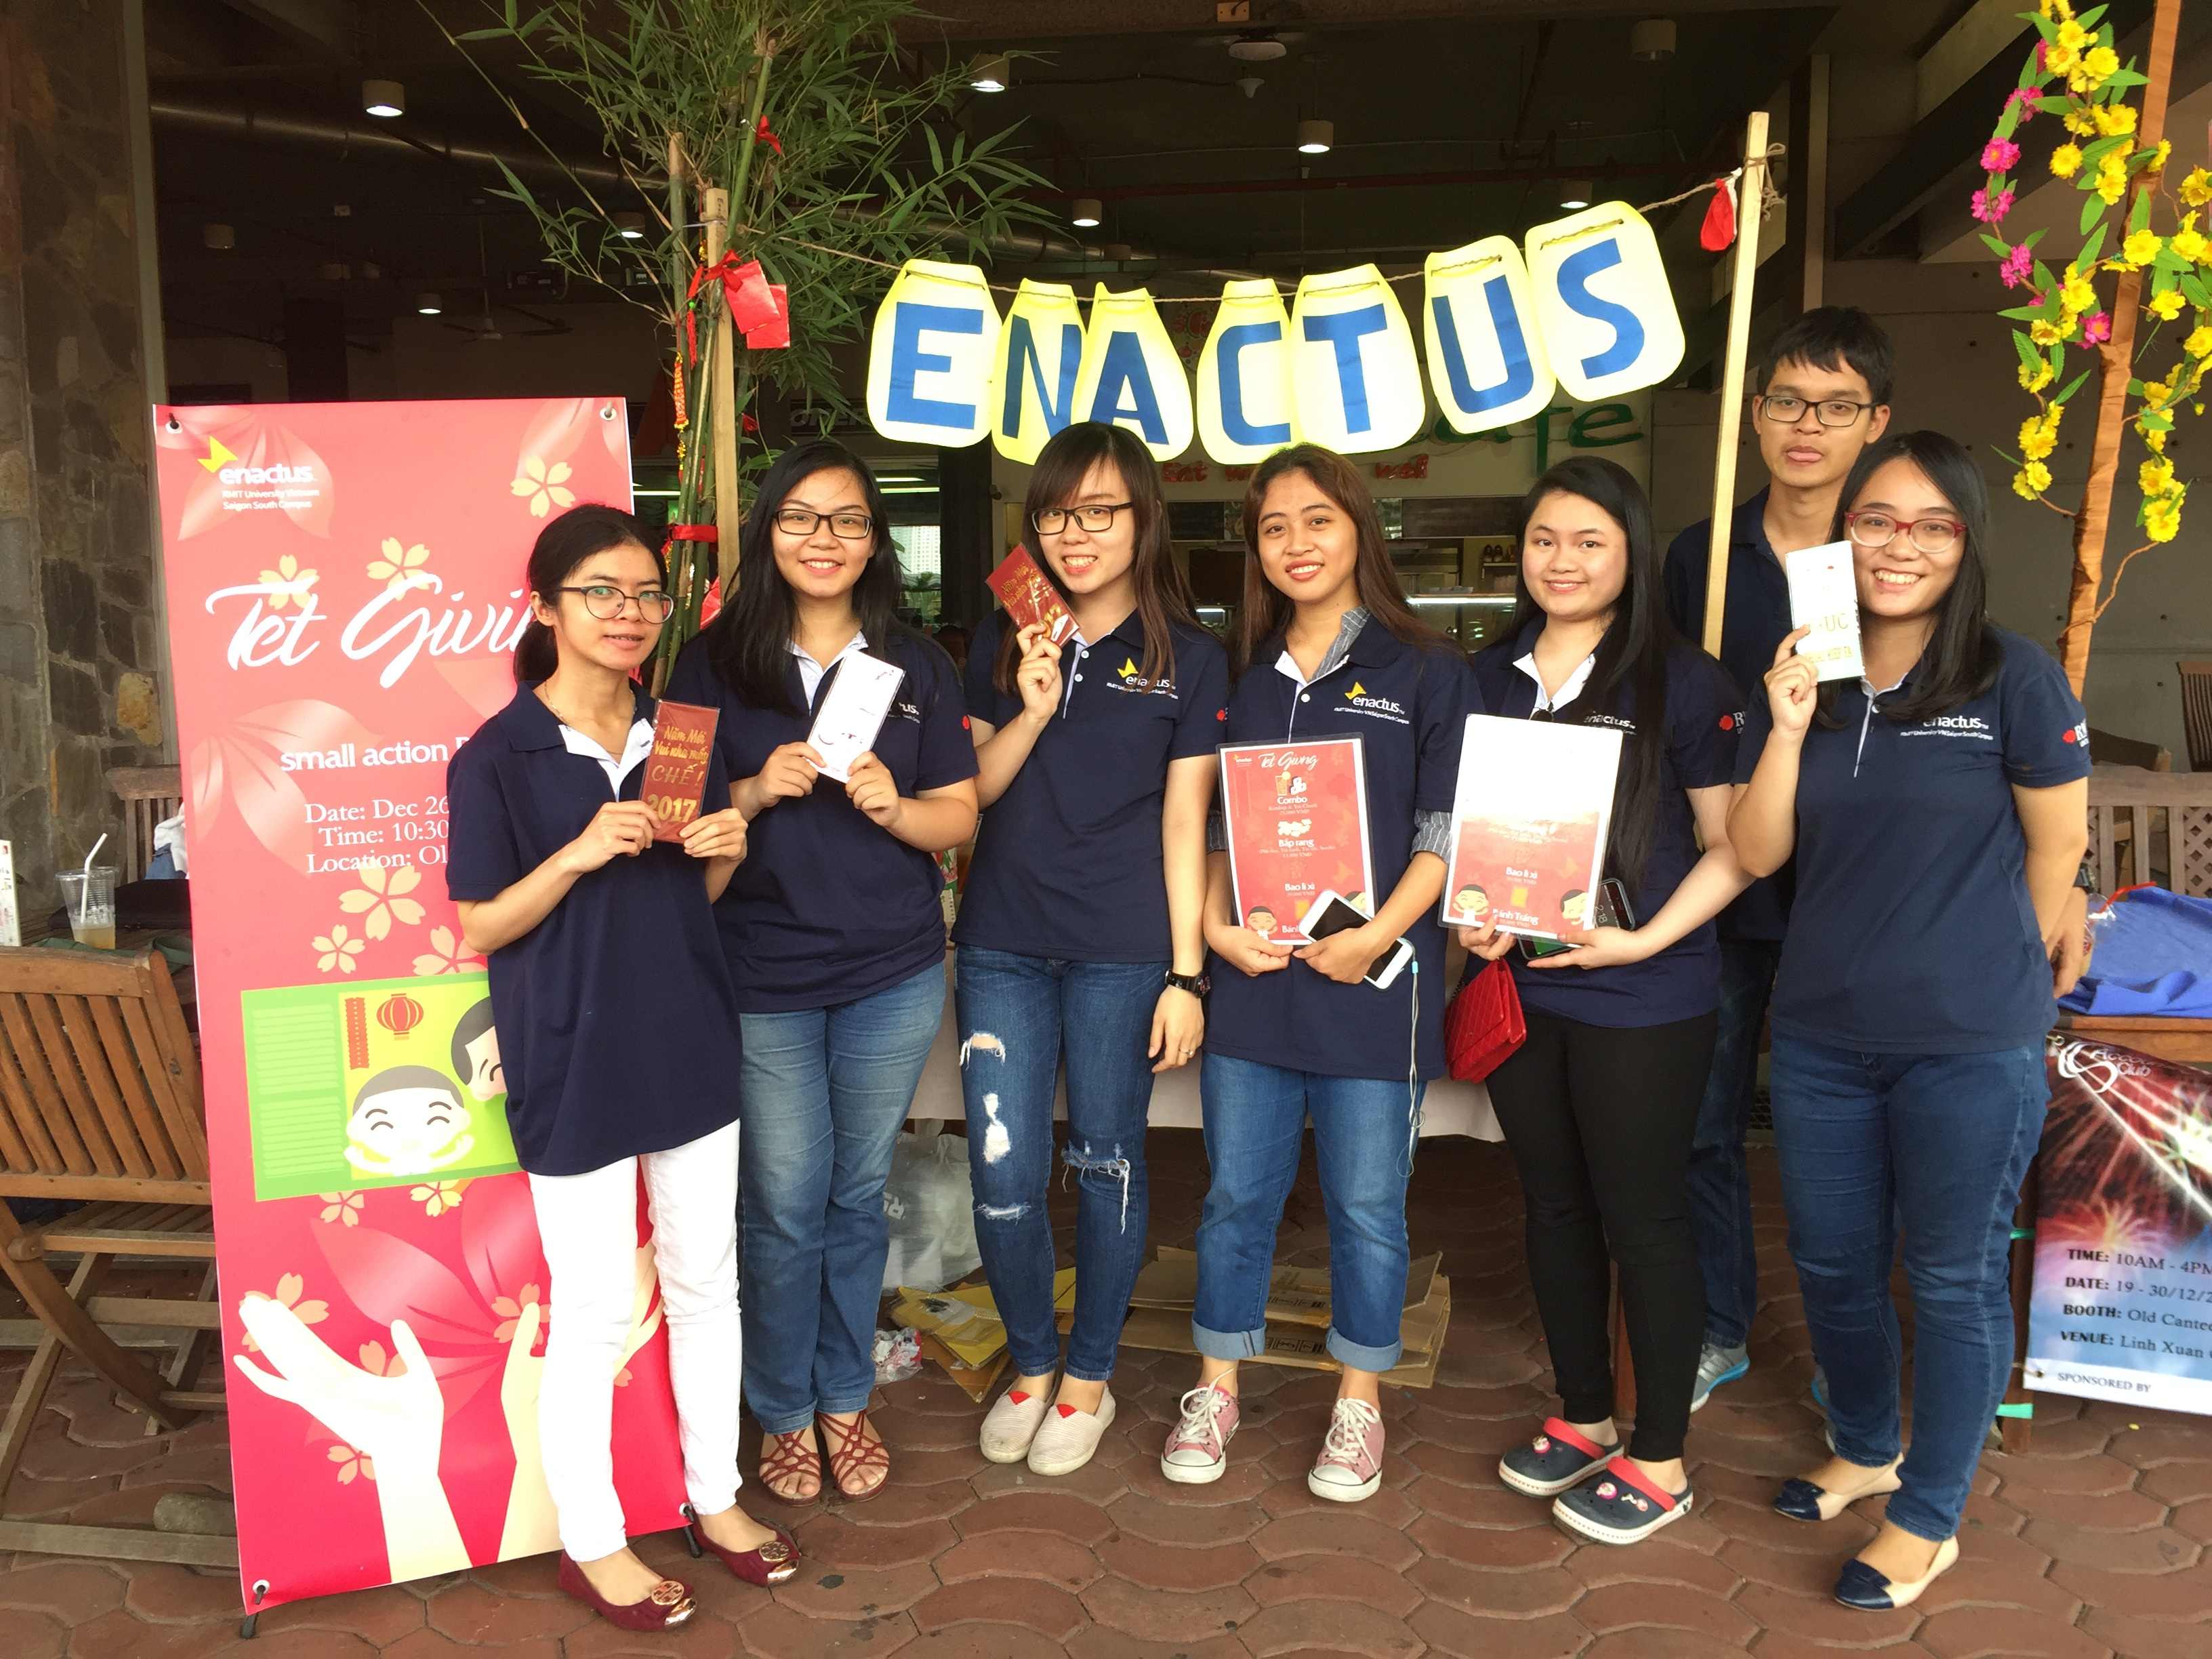 Là một phần của chiến dịch Trao gửi yêu thương ngày Tết, CLB Enactus đã bán thiệp năm mới, phong bao lì xì và đồ ăn nhanh để gây quỹ cho trẻ em kém may mắn tại Mái ấm Tre xanh ở TP.  Hồ Chí Minh.